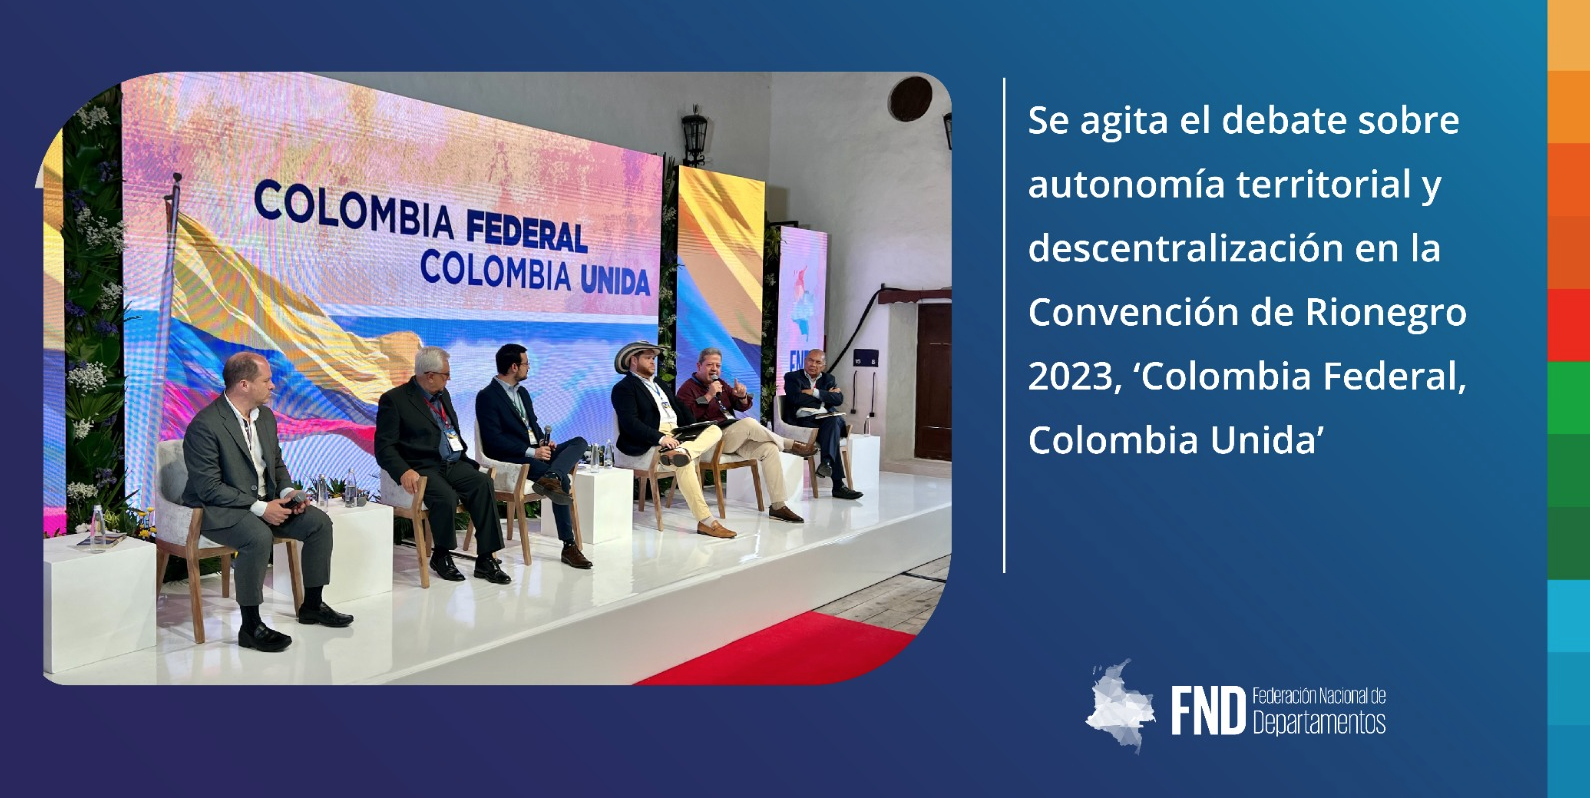 Se agita el debate sobre autonomía territorial y descentralización en la Convención de Rionegro 2023, ‘Colombia Federal, Colombia Unida’